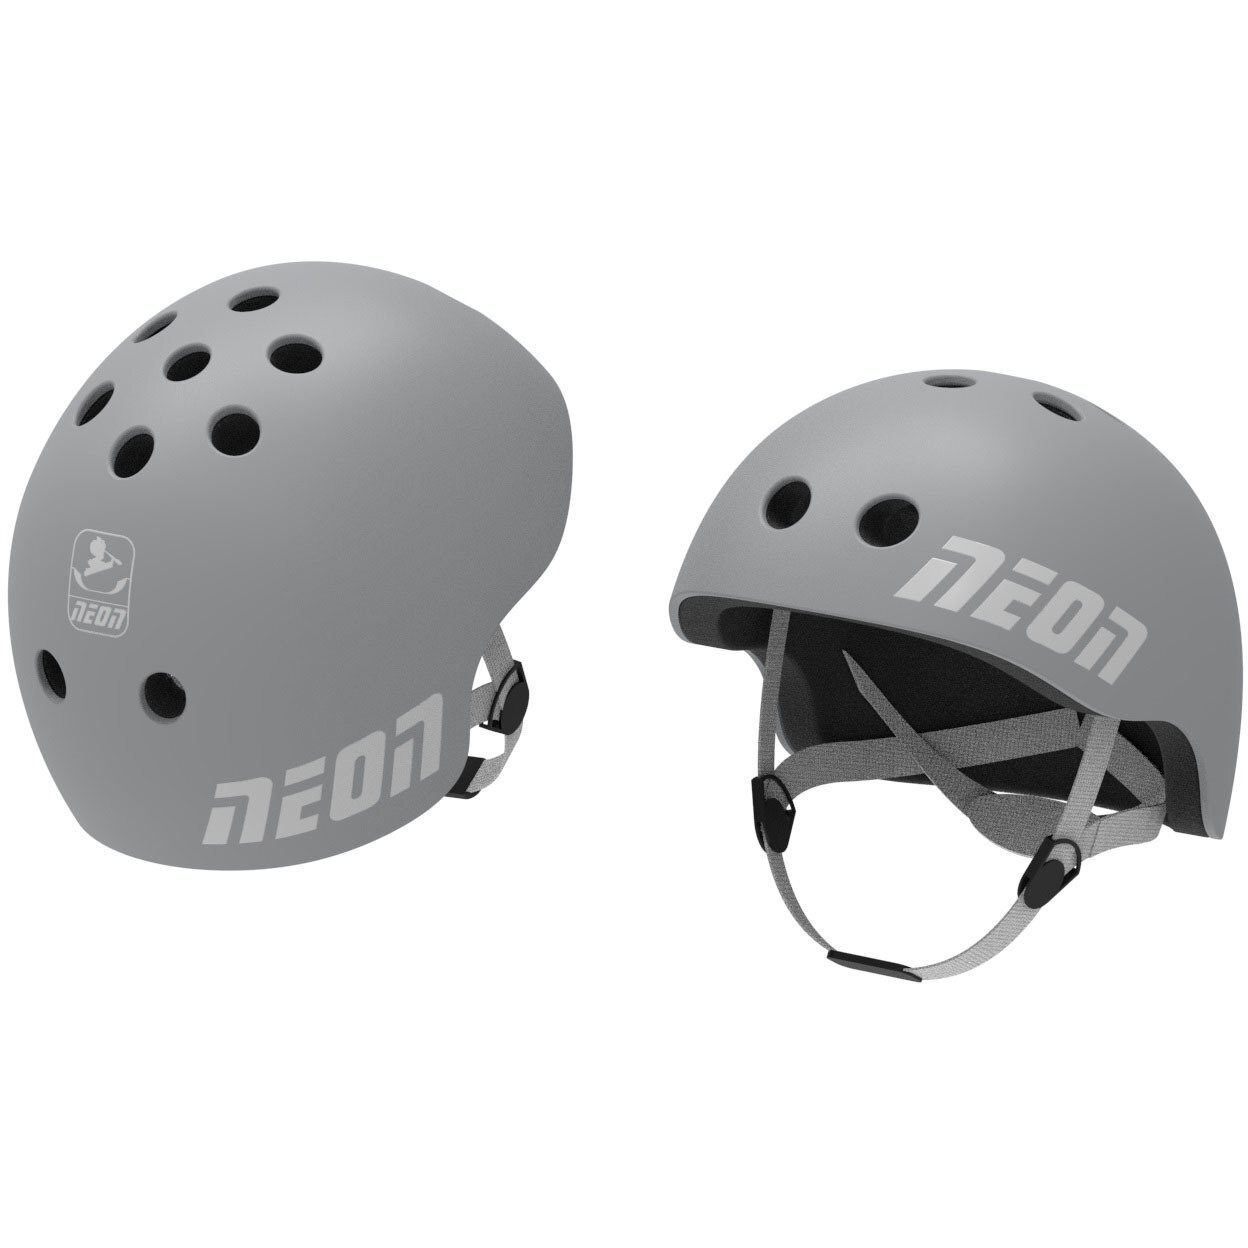 Защитный шлем Neon 2021 размер M серый фото 1